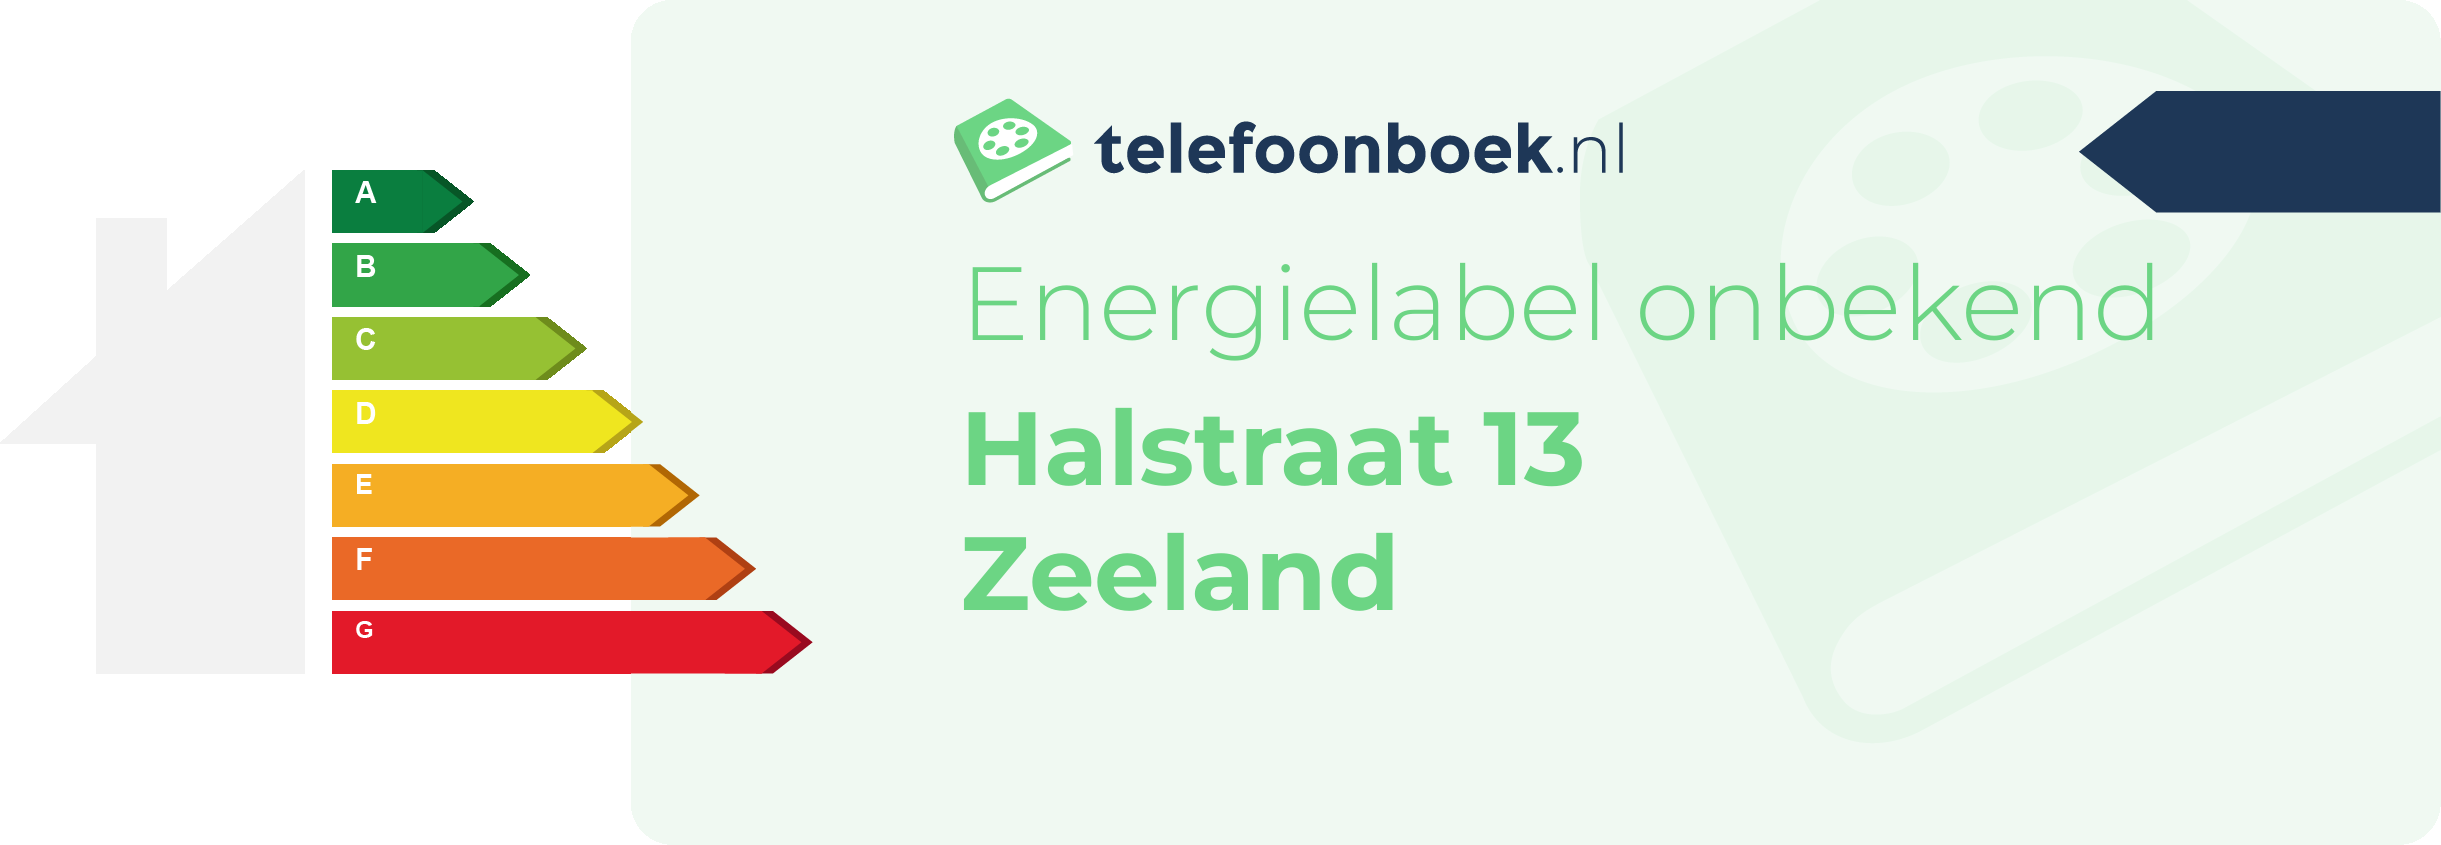 Energielabel Halstraat 13 Zeeland